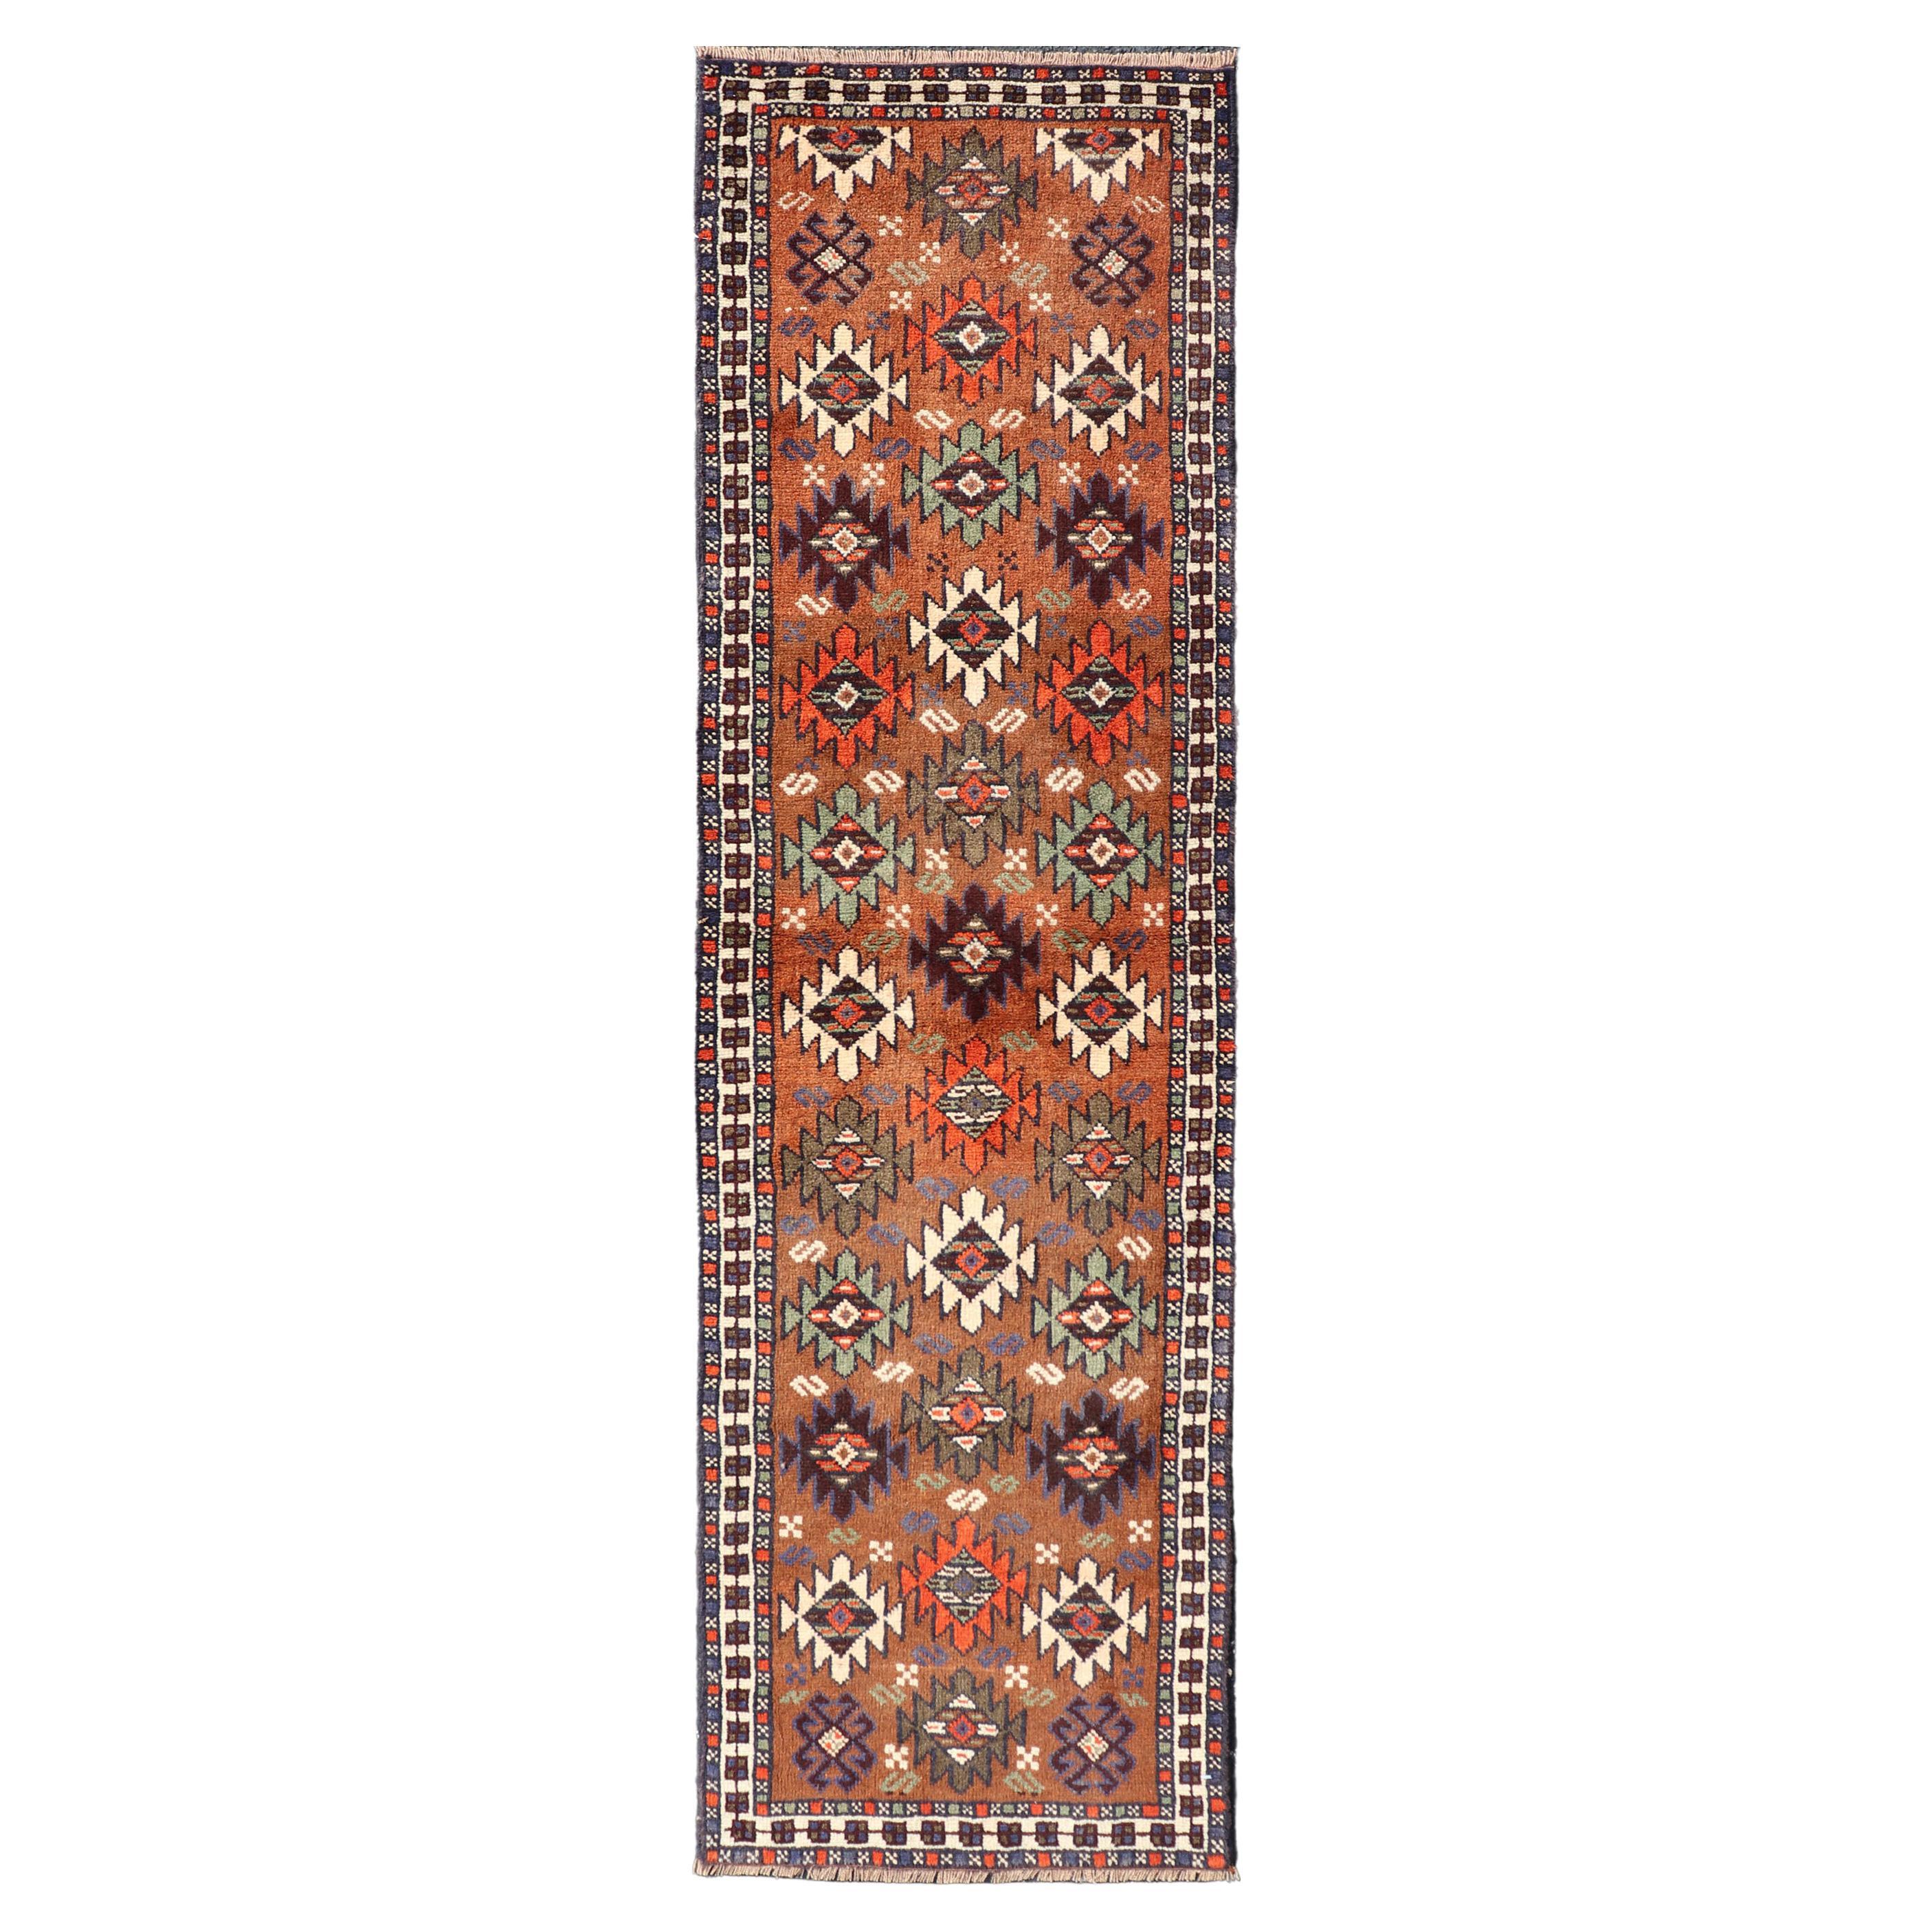 Tapis de couloir Kars turc vintage avec motif tribal dans les couleurs orange-marron